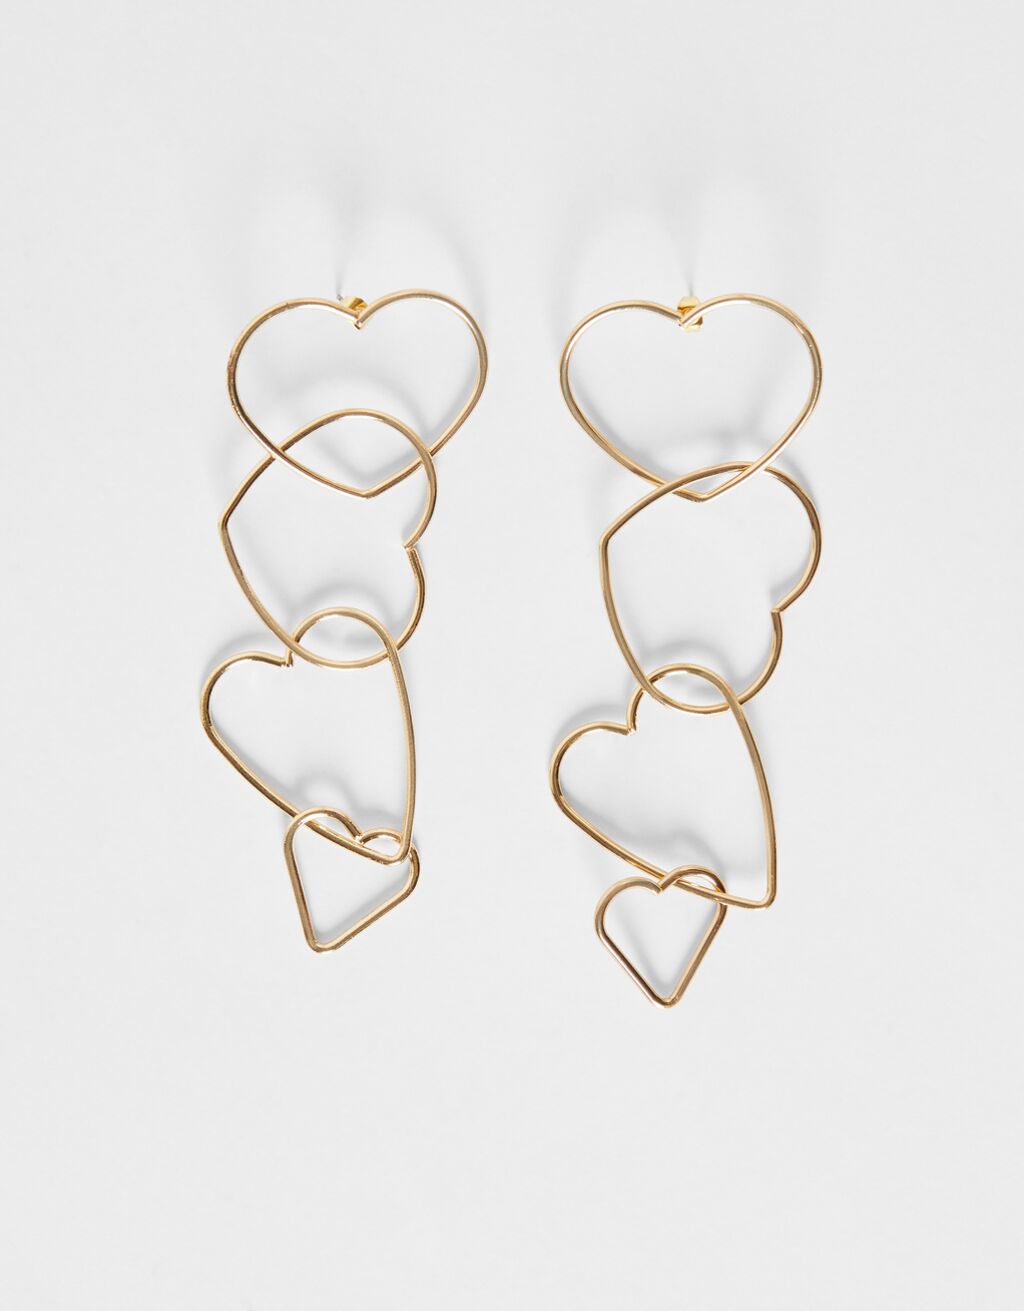 Heart cascading earrings